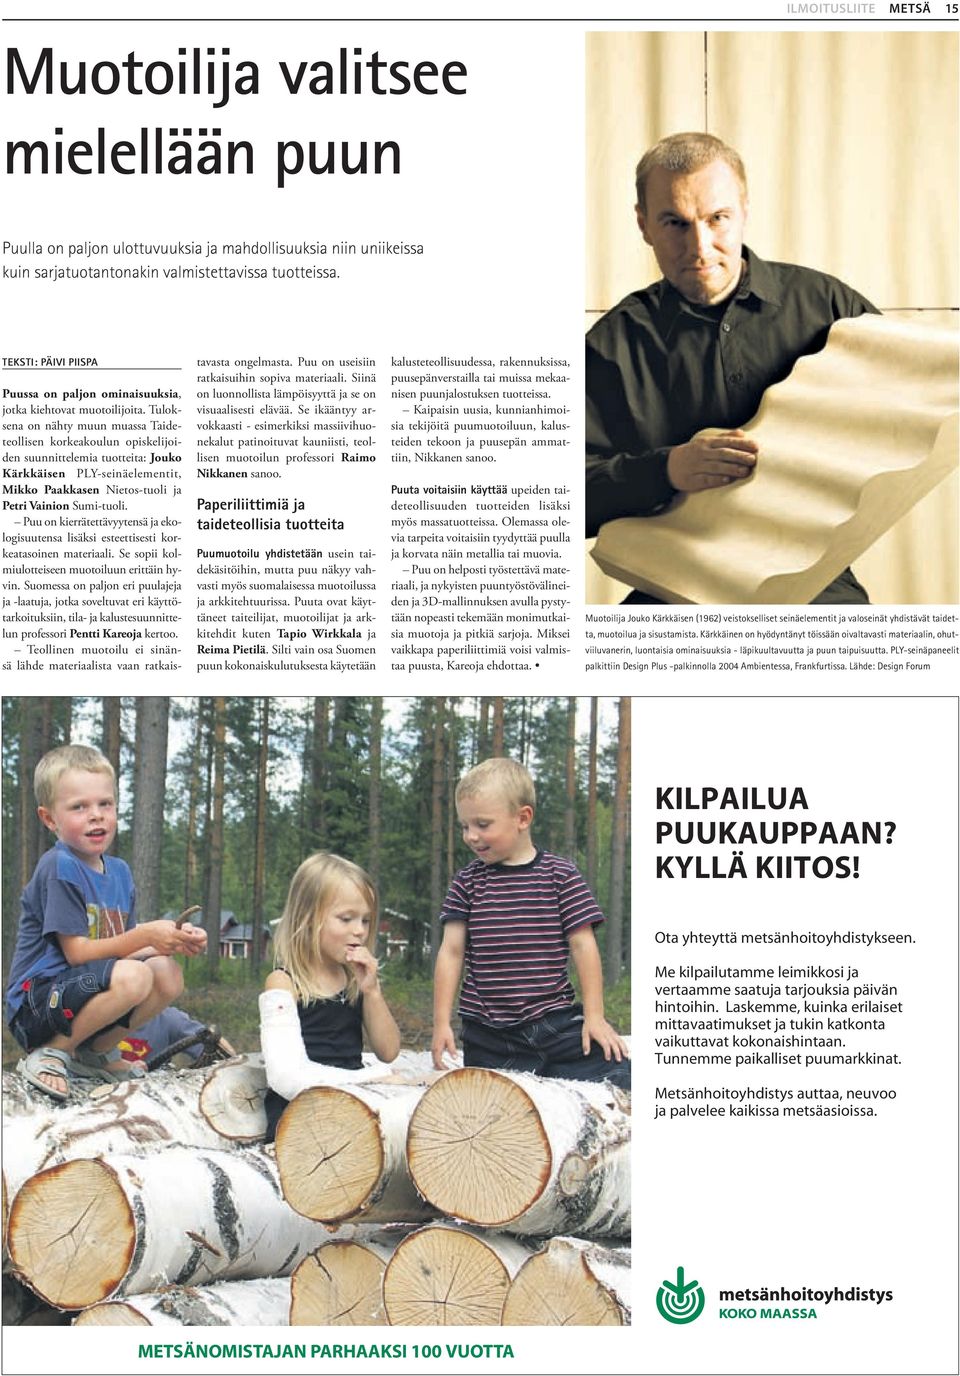 Tuloksena on nähty muun muassa Taideteollisen korkeakoulun opiskelijoiden suunnittelemia tuotteita: Jouko Kärkkäisen PLY-seinäelementit, Mikko Paakkasen Nietos-tuoli ja Petri Vainion Sumi-tuoli.